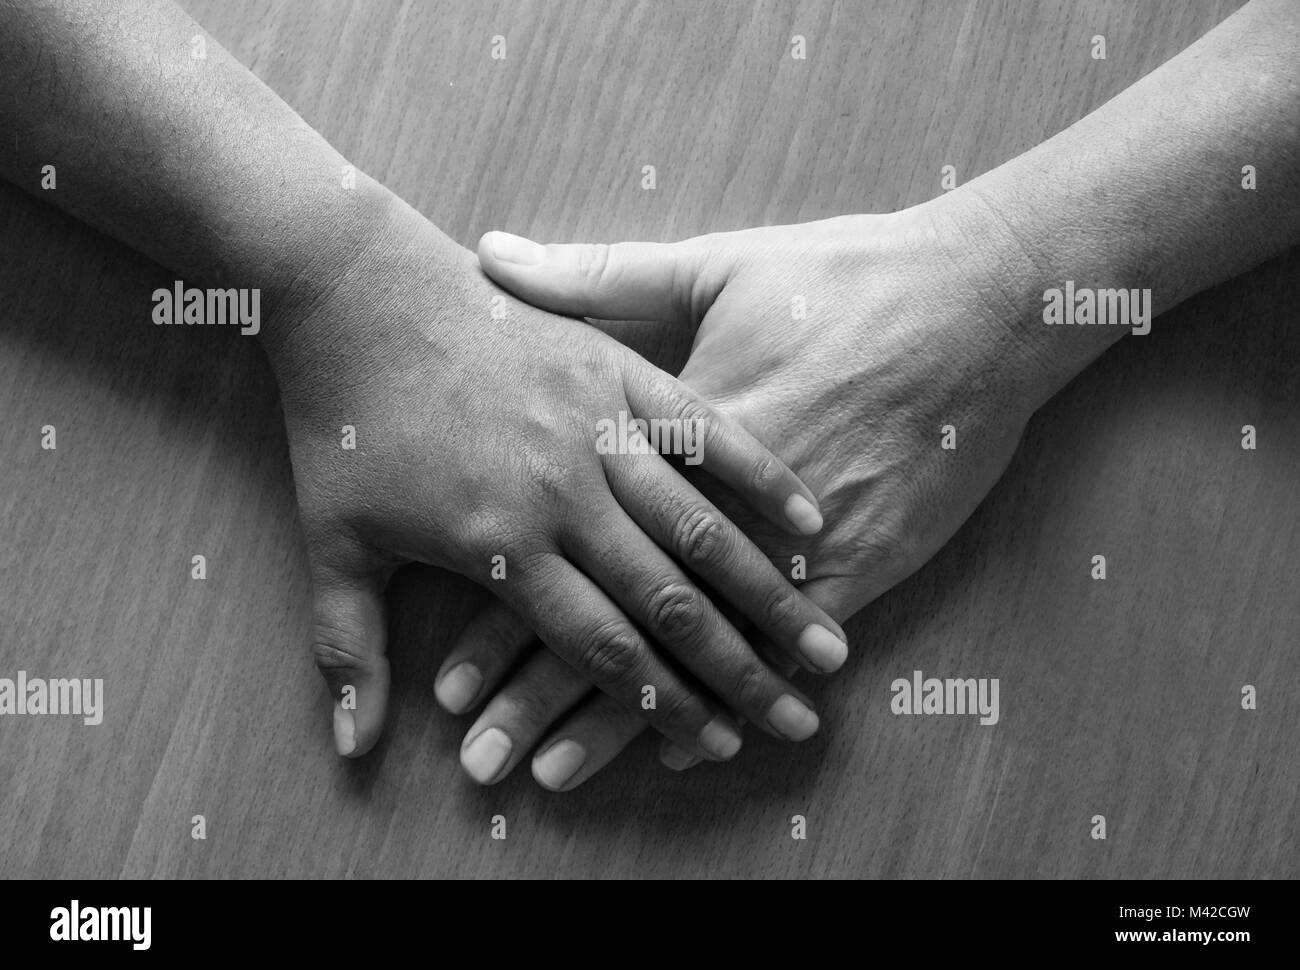 Auf zwei 50 Jahre alte weibliche Hände und Unterarme ontop gelegt, die obere Hand ist der Asiatischen und der unteren Hand ist kaukasisch, bla Stockfoto